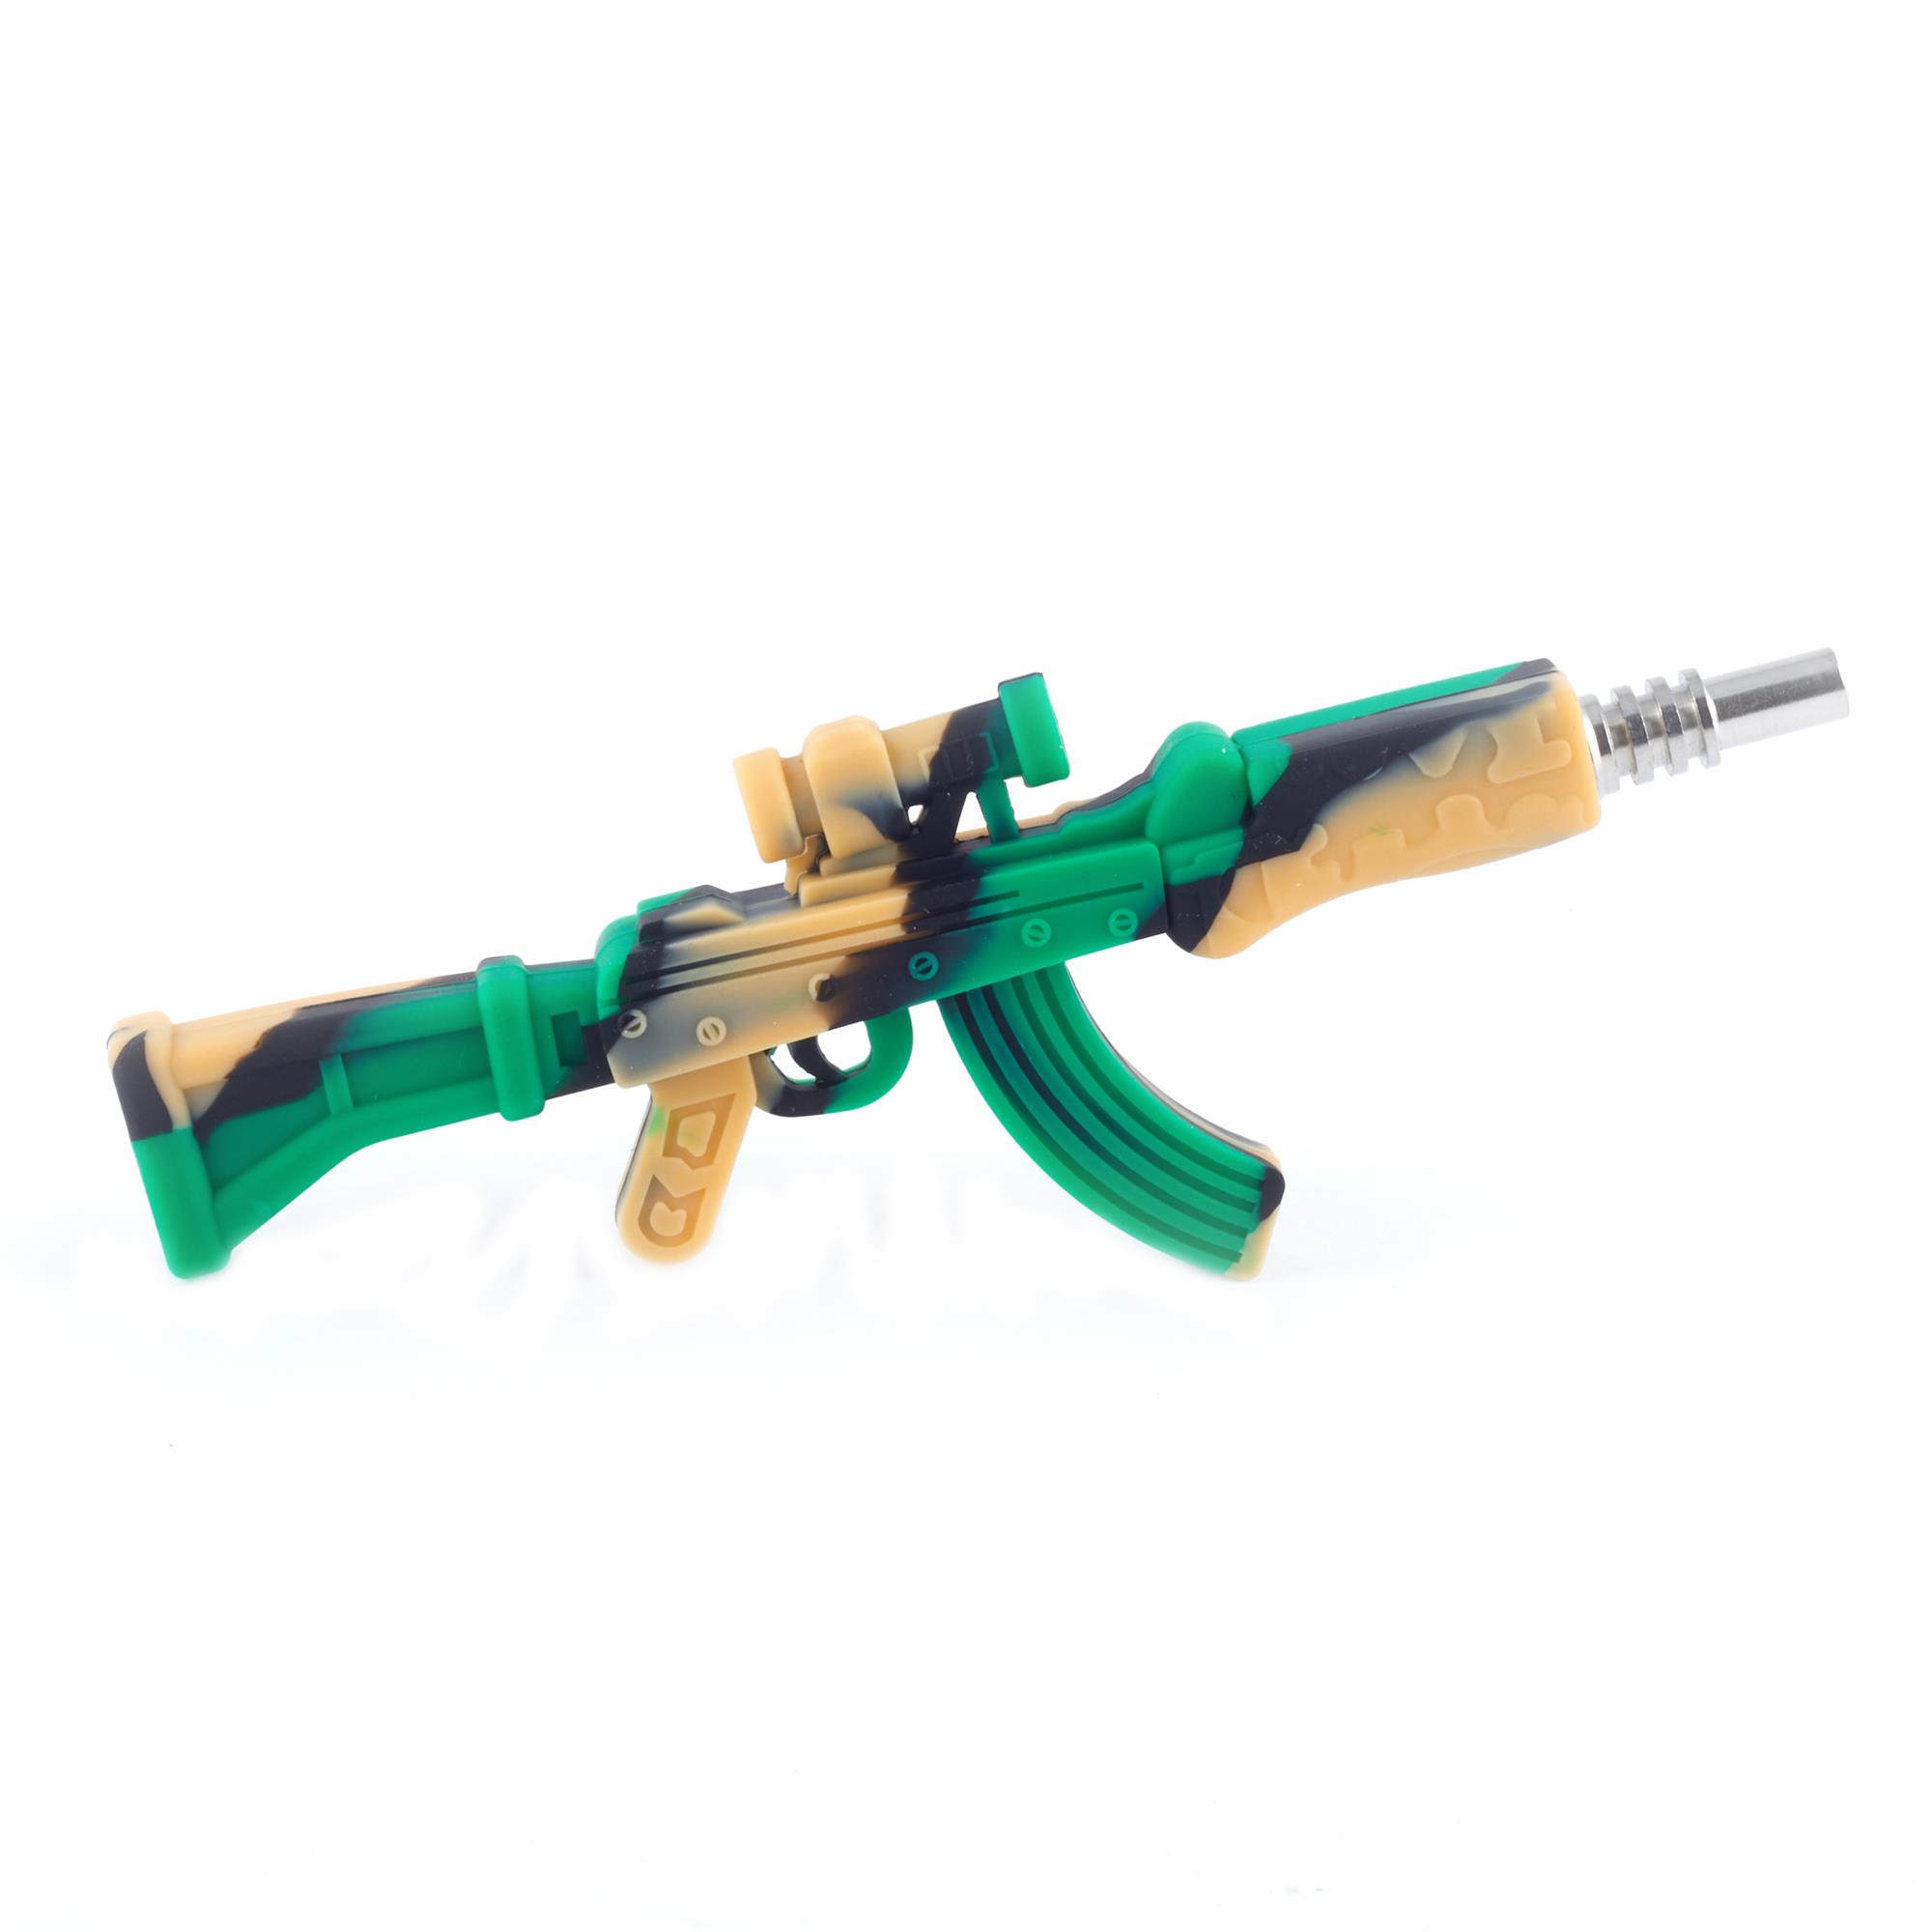 AK-47 NECTAR COLLECTOR